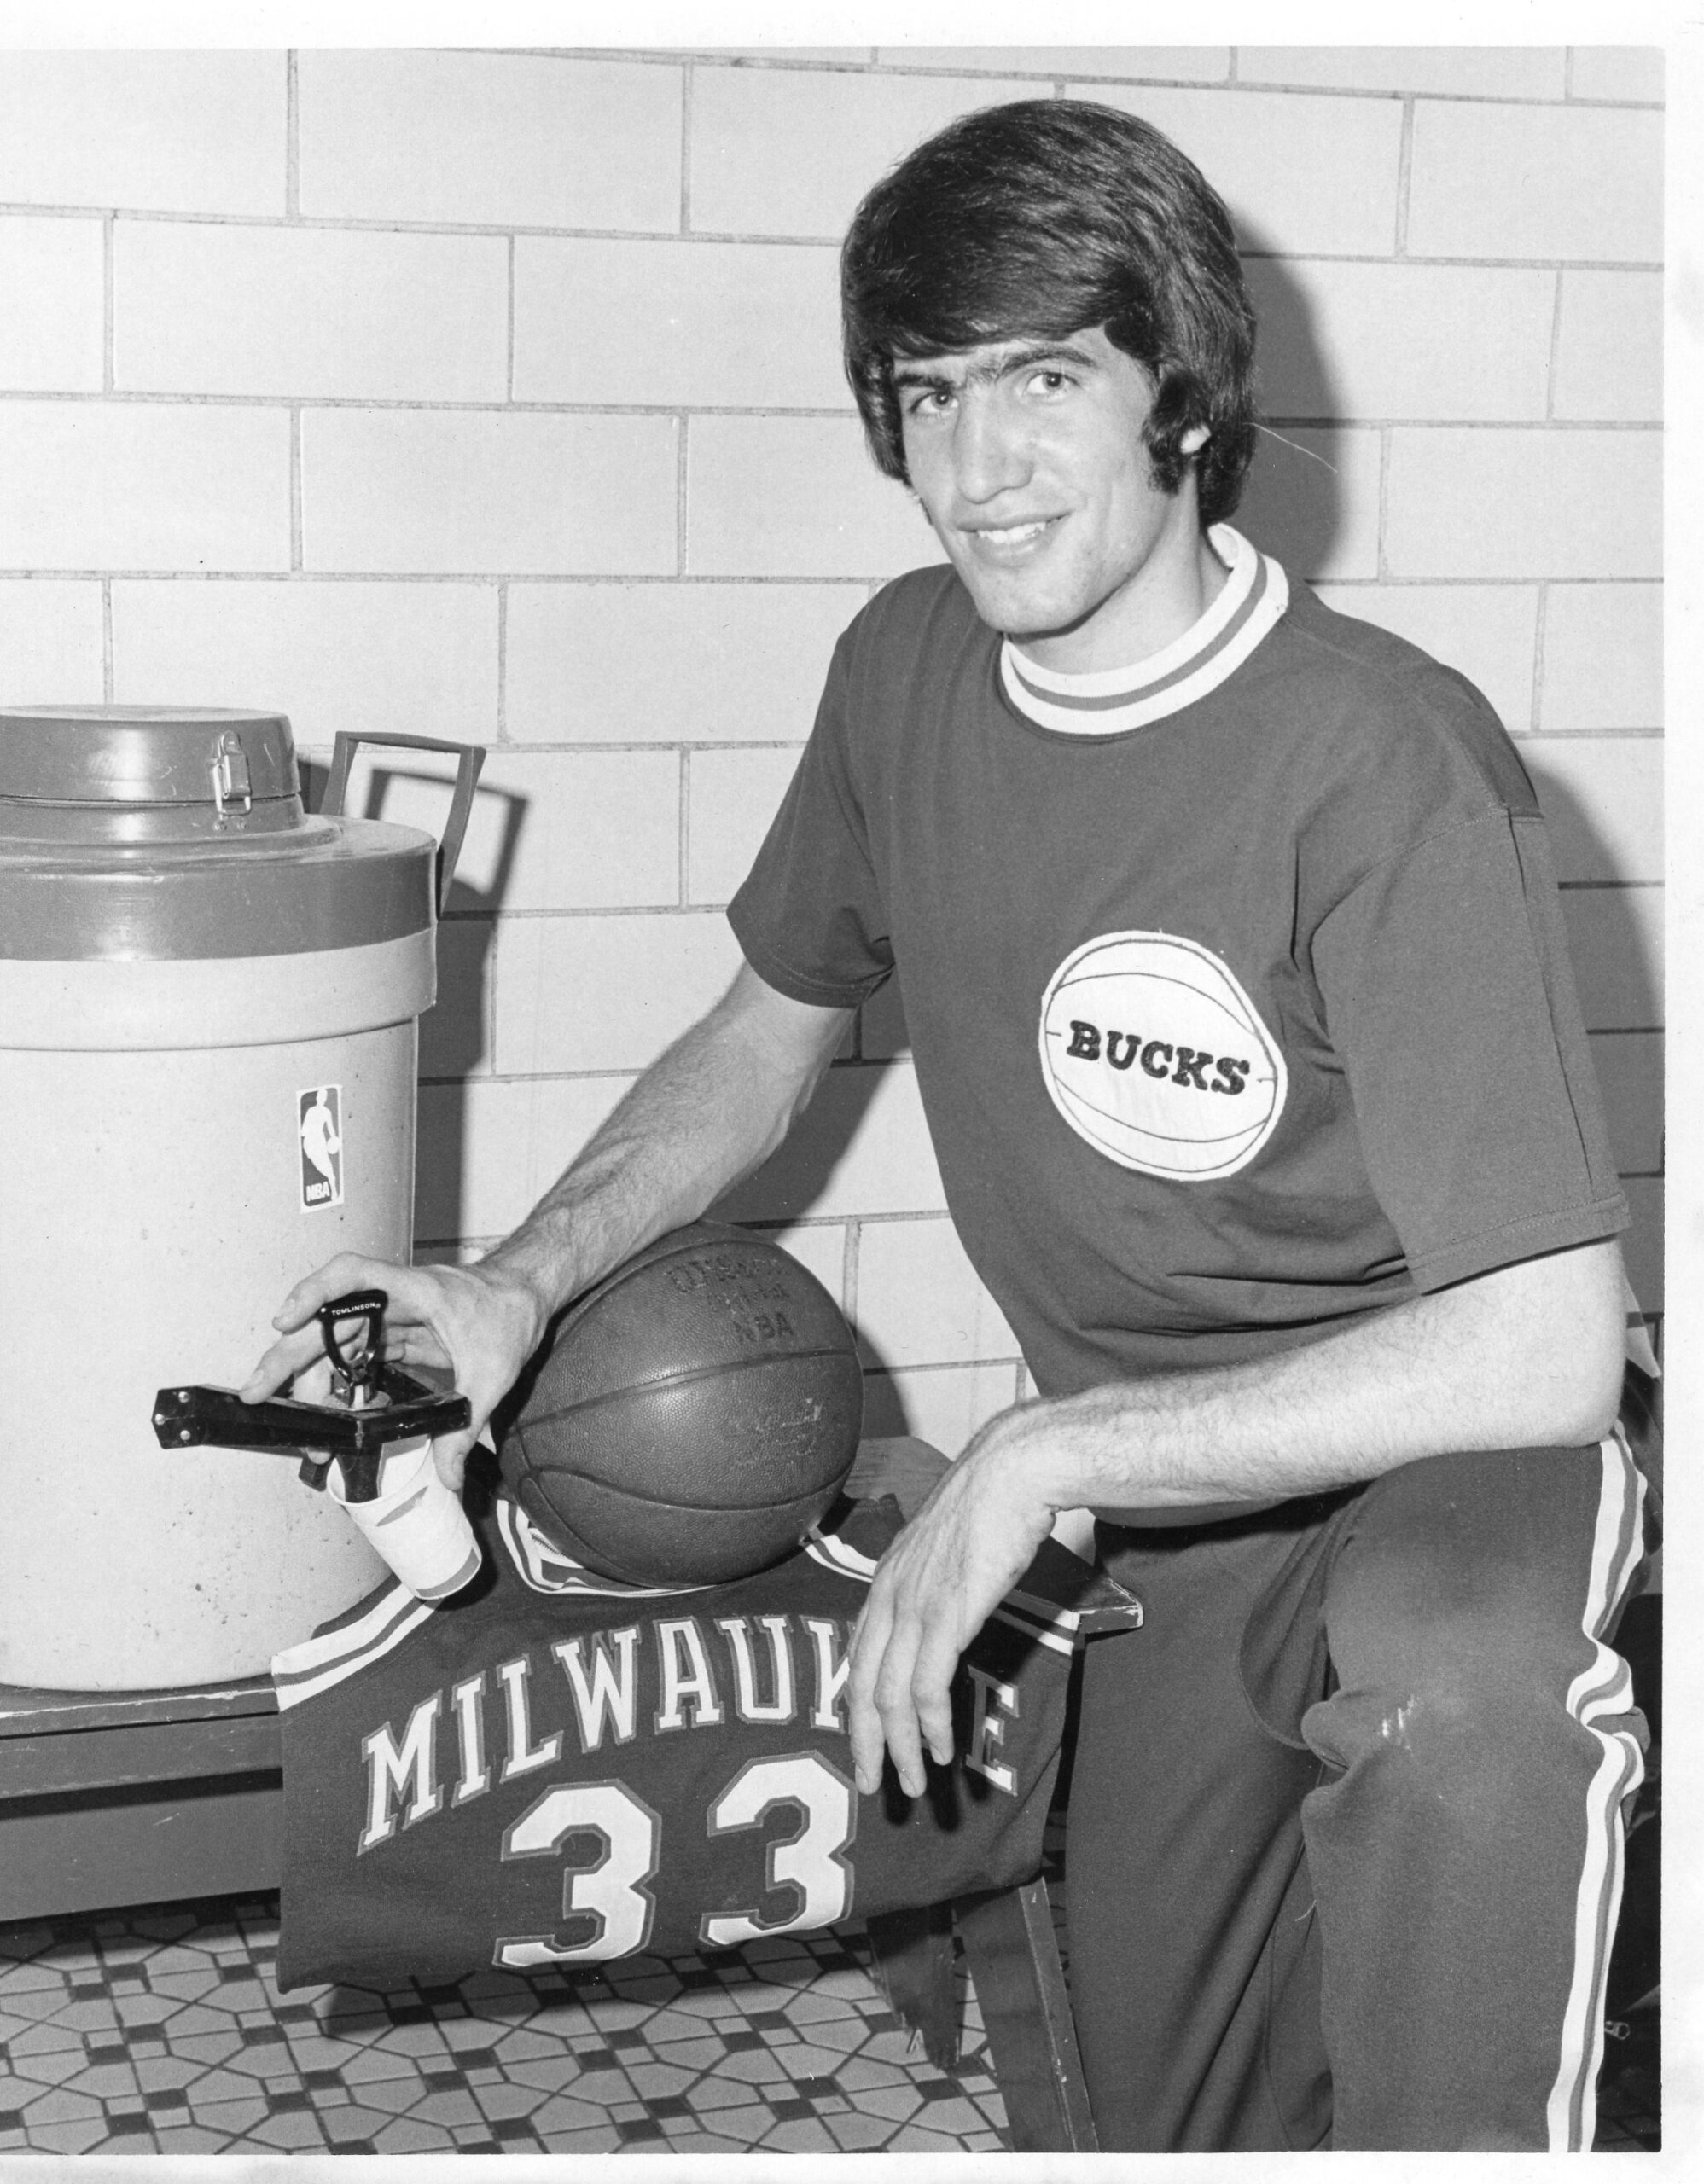 Patrick McBride poses with Milwaukee Bucks gear